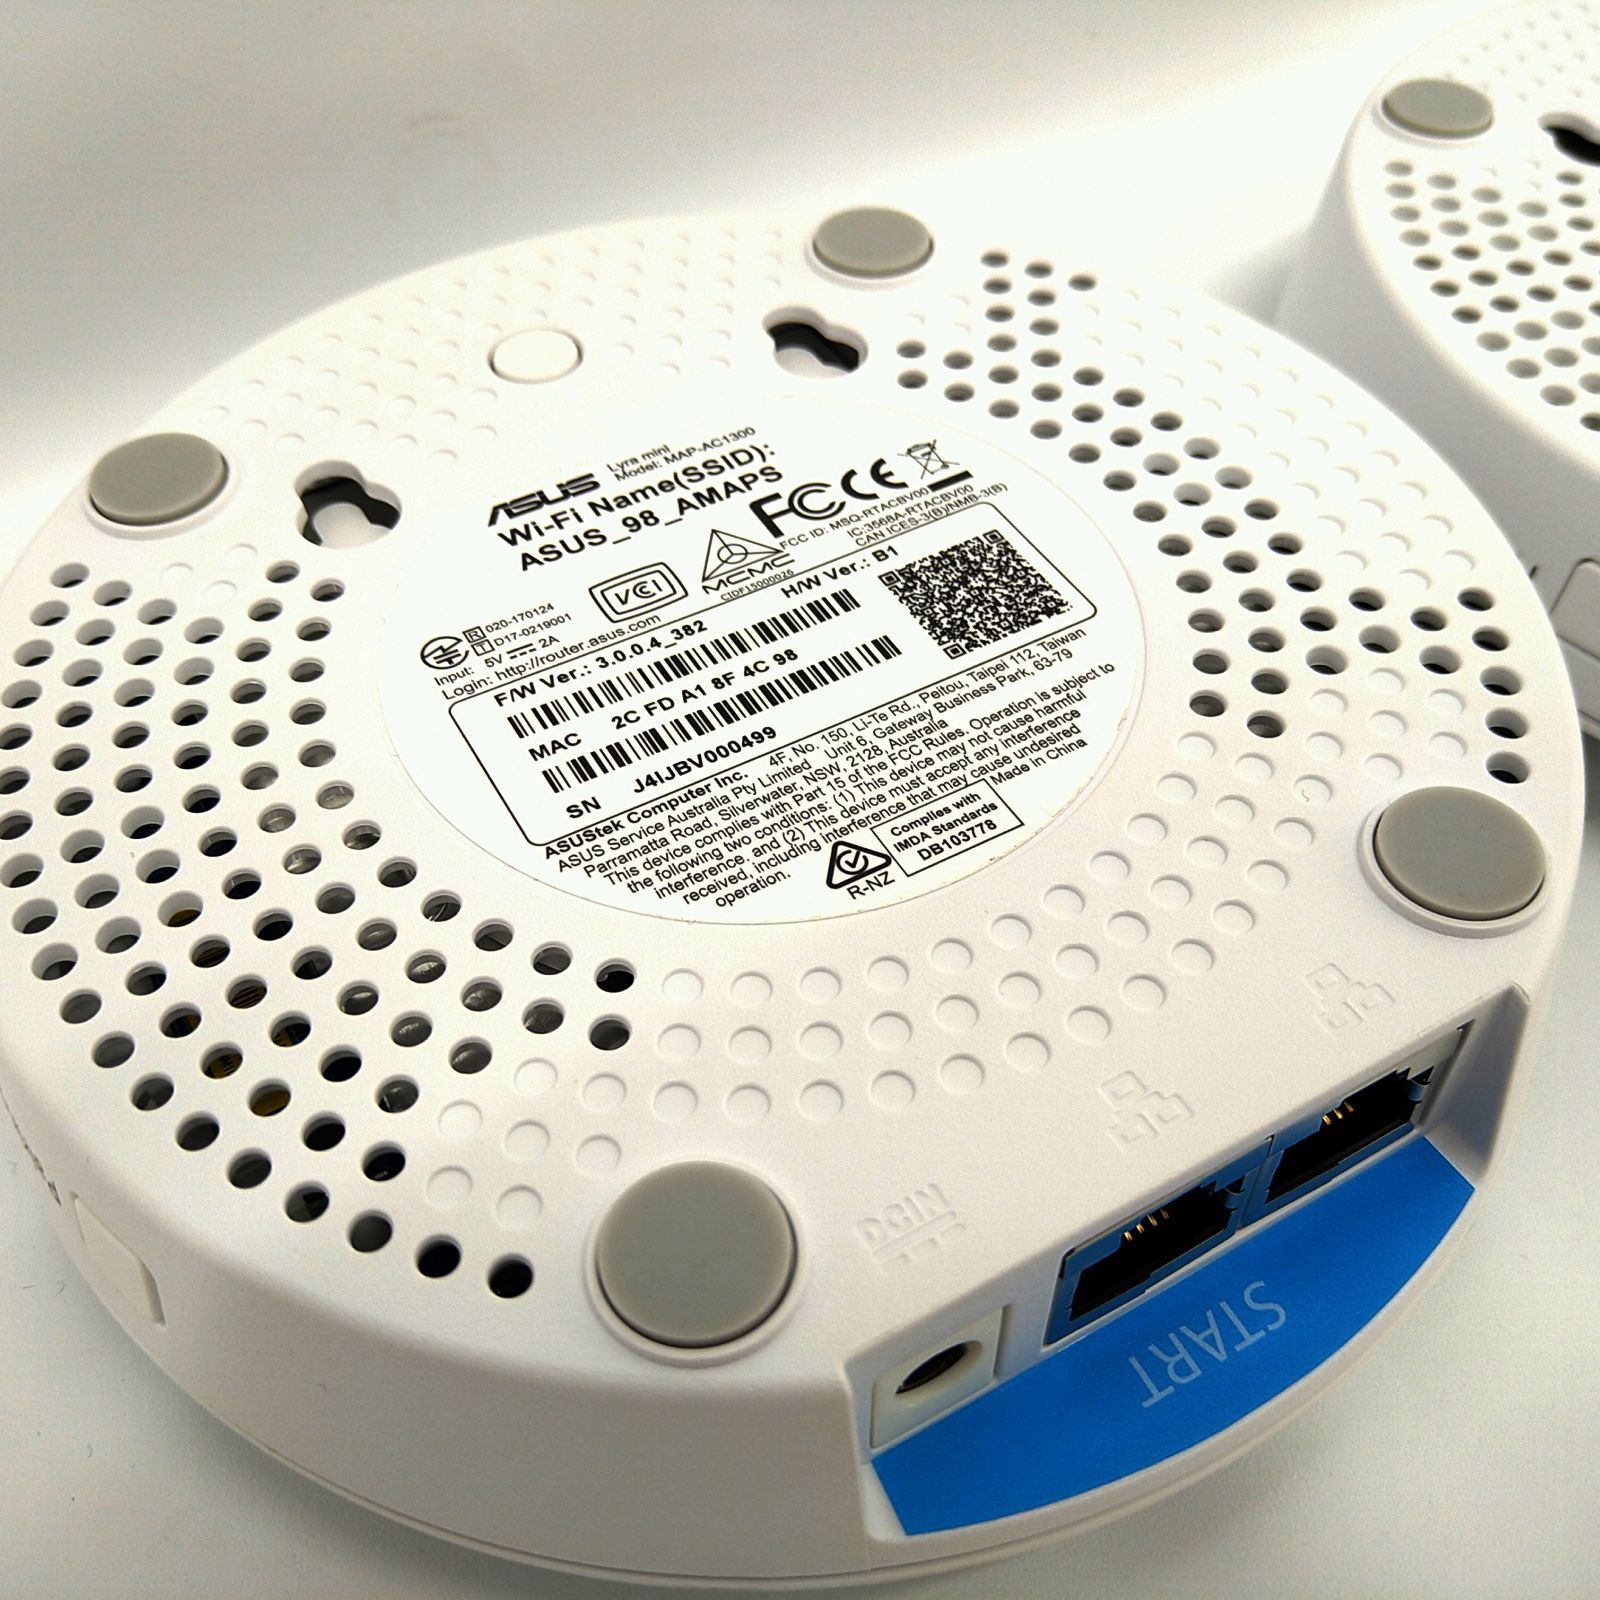 ASUS　エイスース　Lyra mini　無線LAN (Wi-Fi)ルーターPC周辺機器